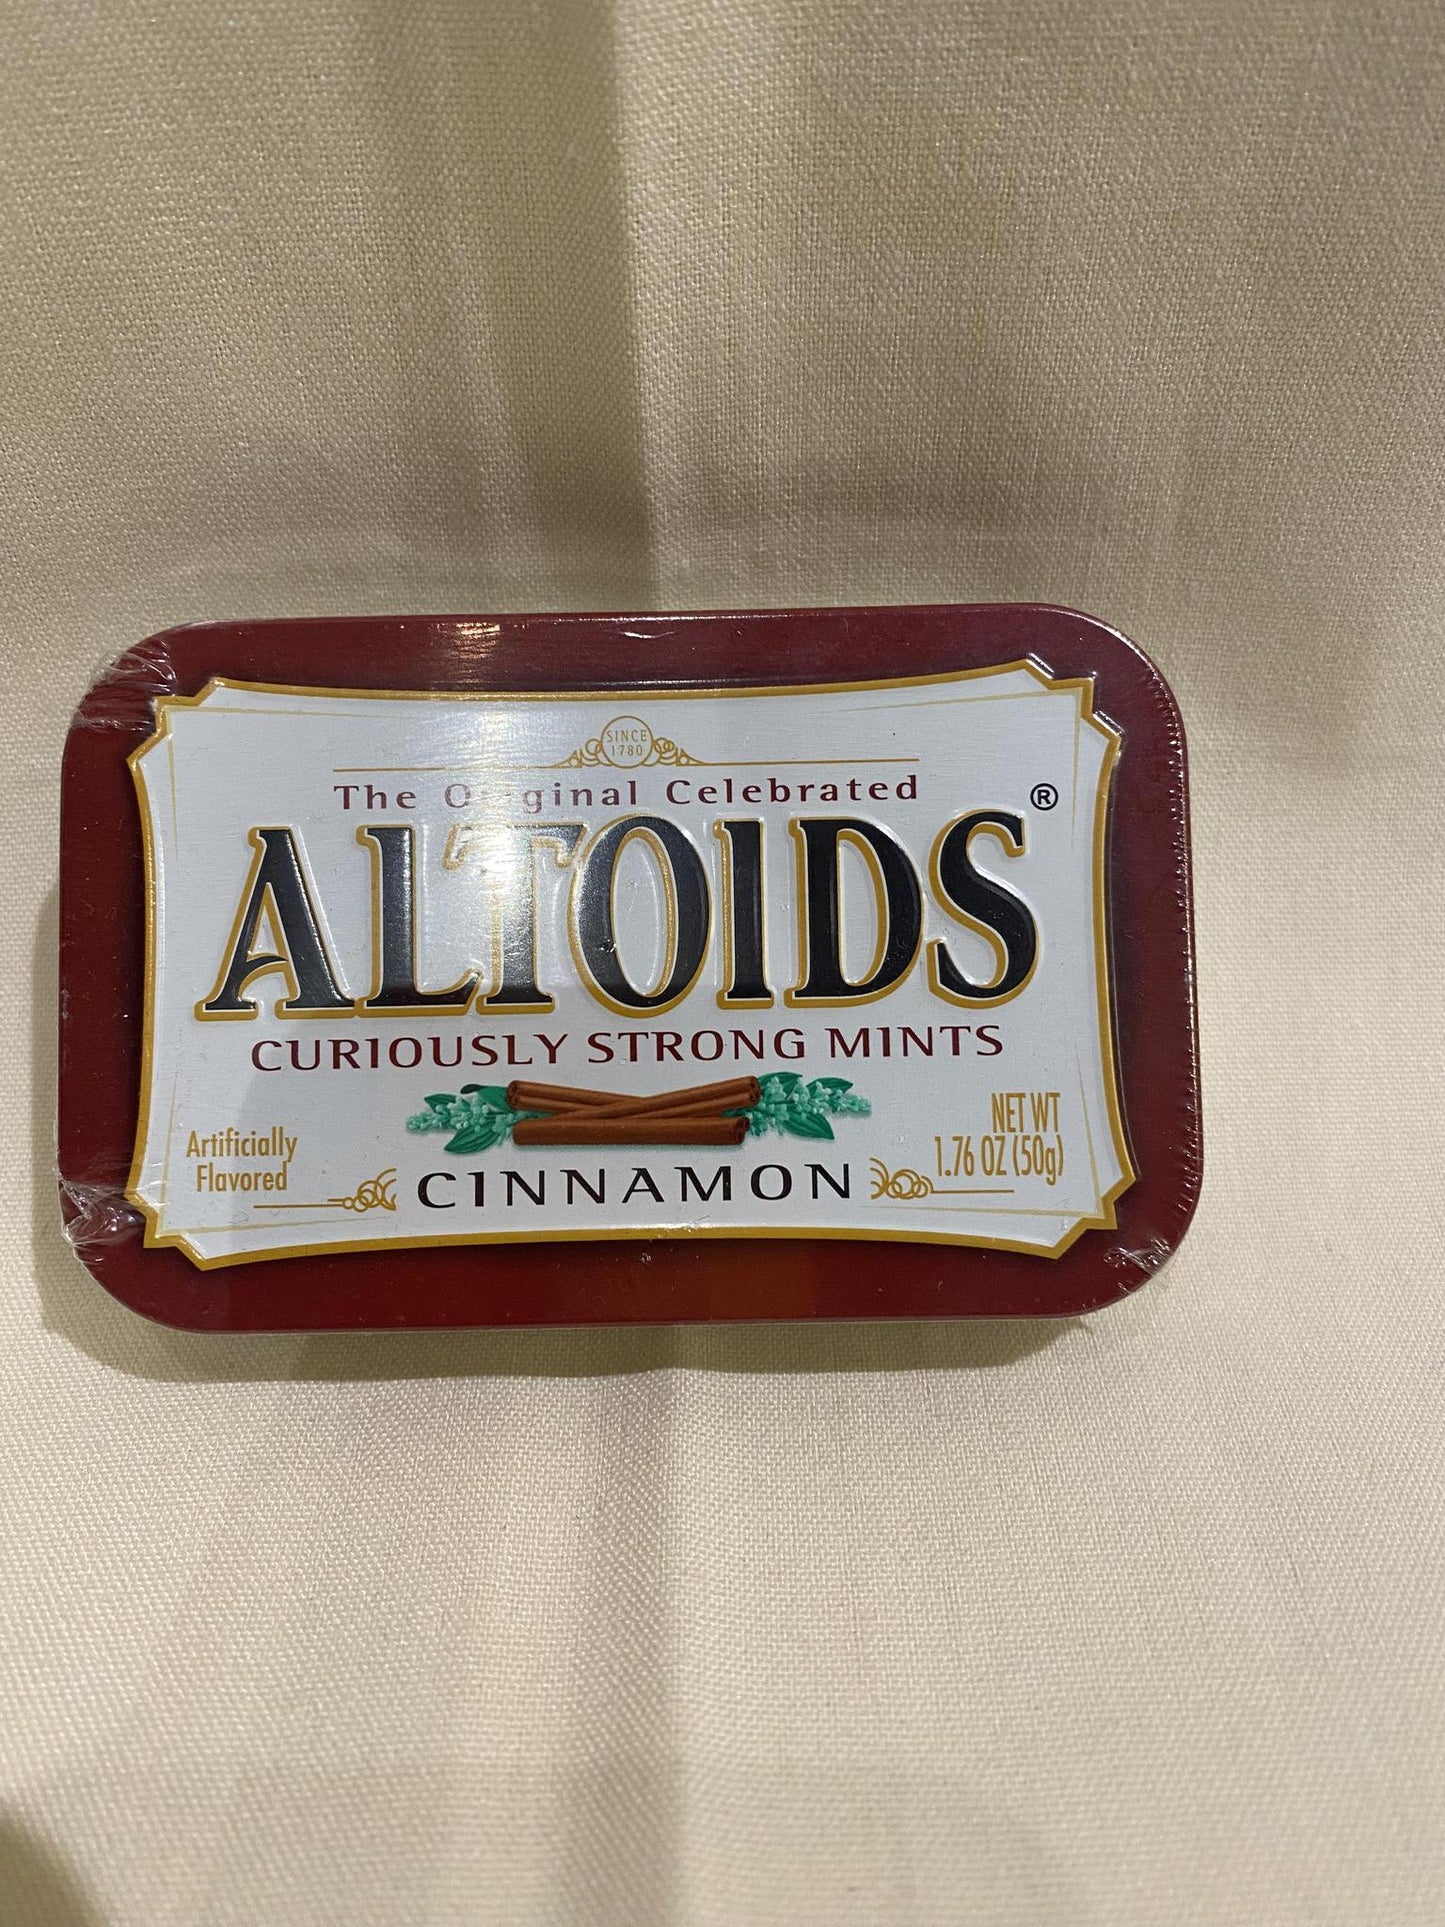 Altoids Cinnamon Sundries